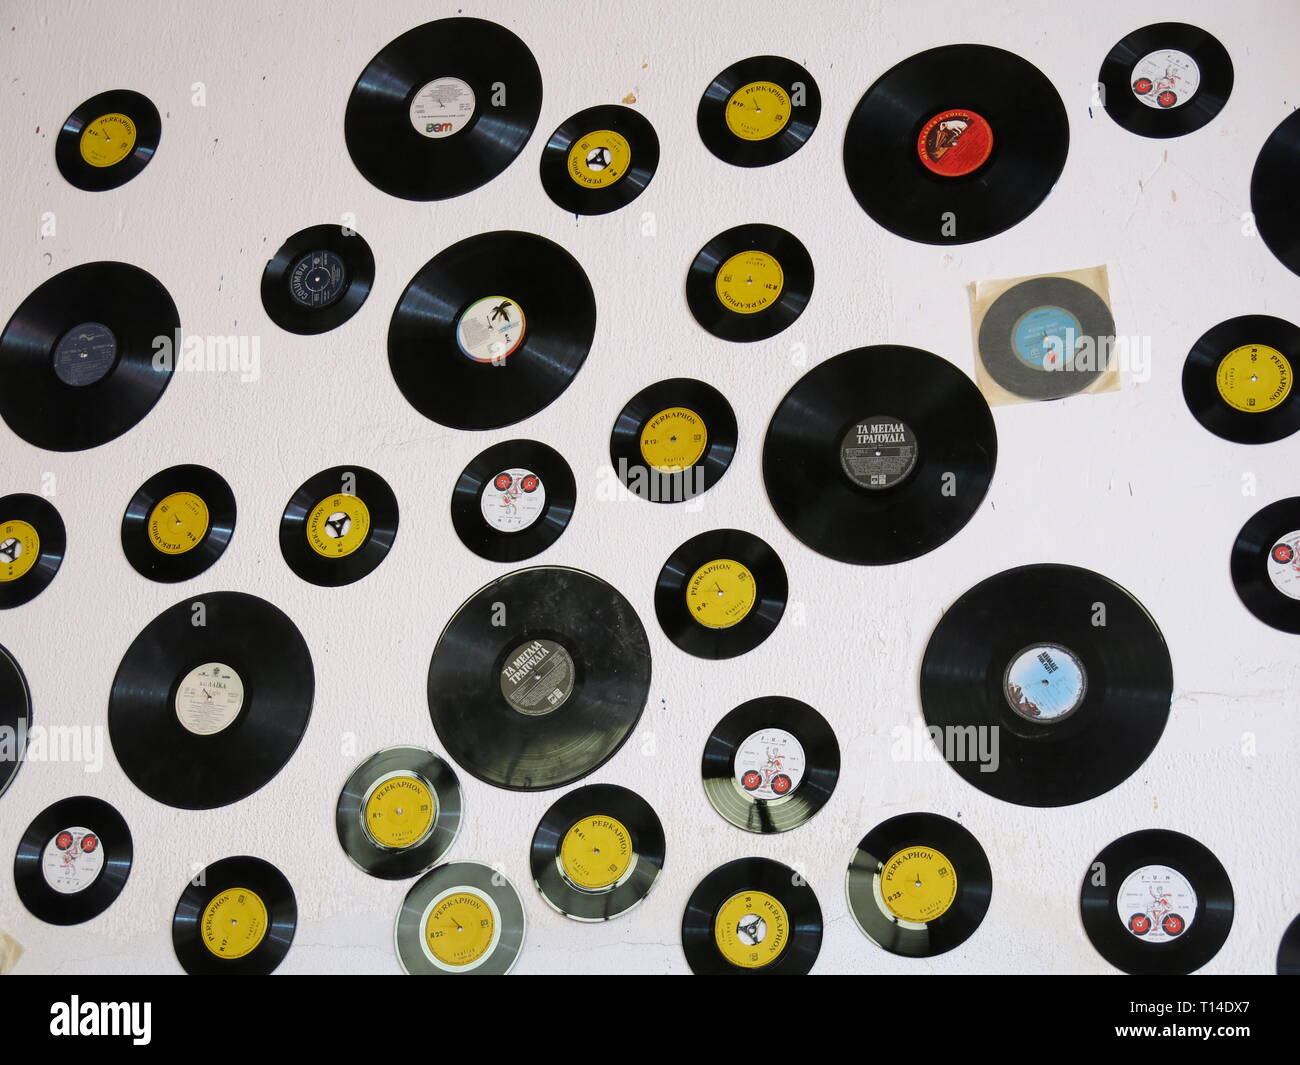 Dekorative Schallplatten auf weißer Wand Stockfotografie - Alamy